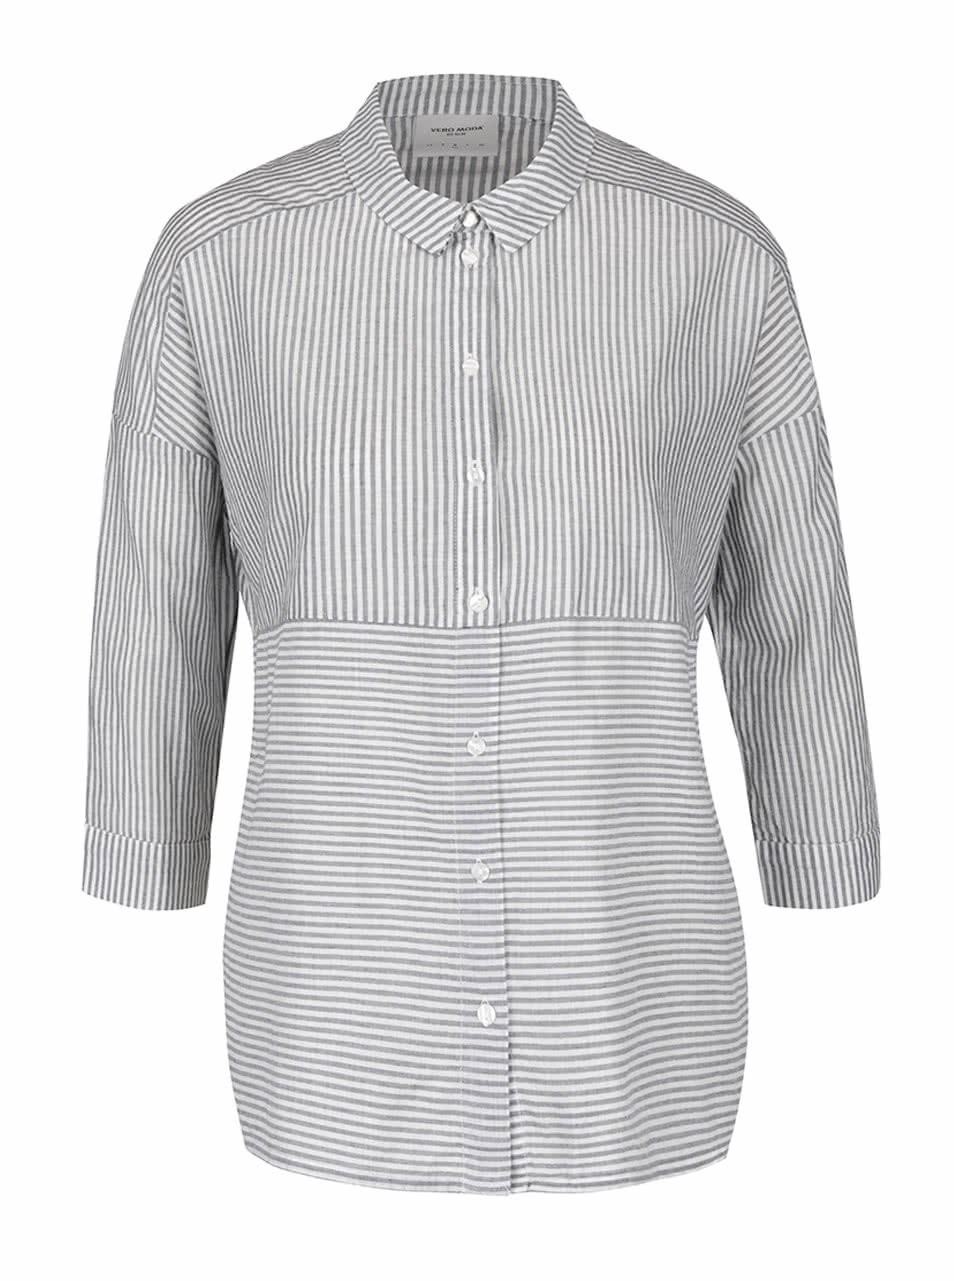 Krémovo-šedá pruhovaná košile s 3/4 rukávy Vero Moda Cille